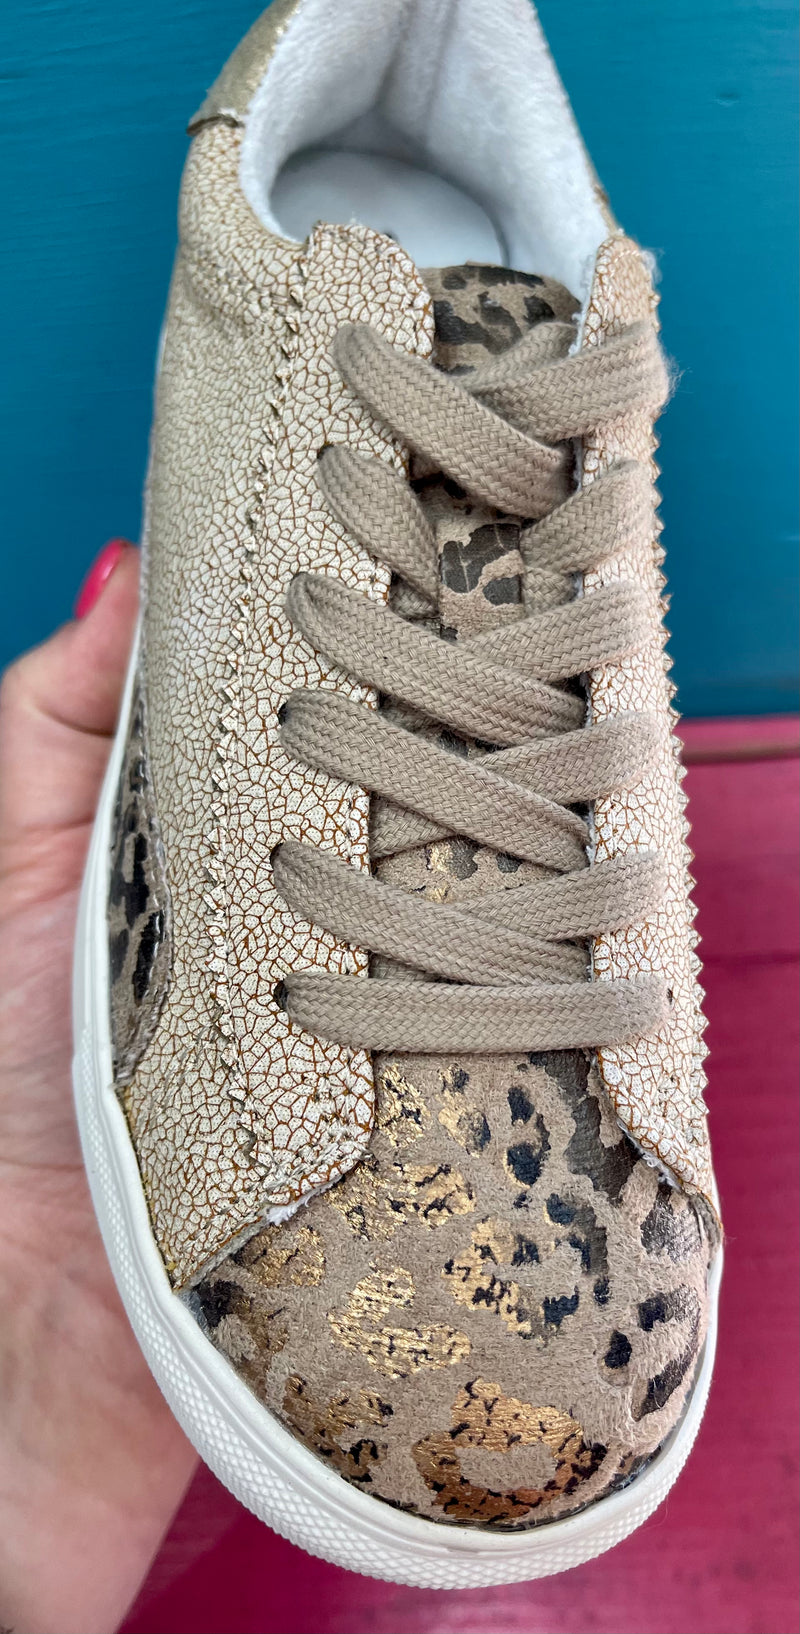 Classic Cheetah Sneakers